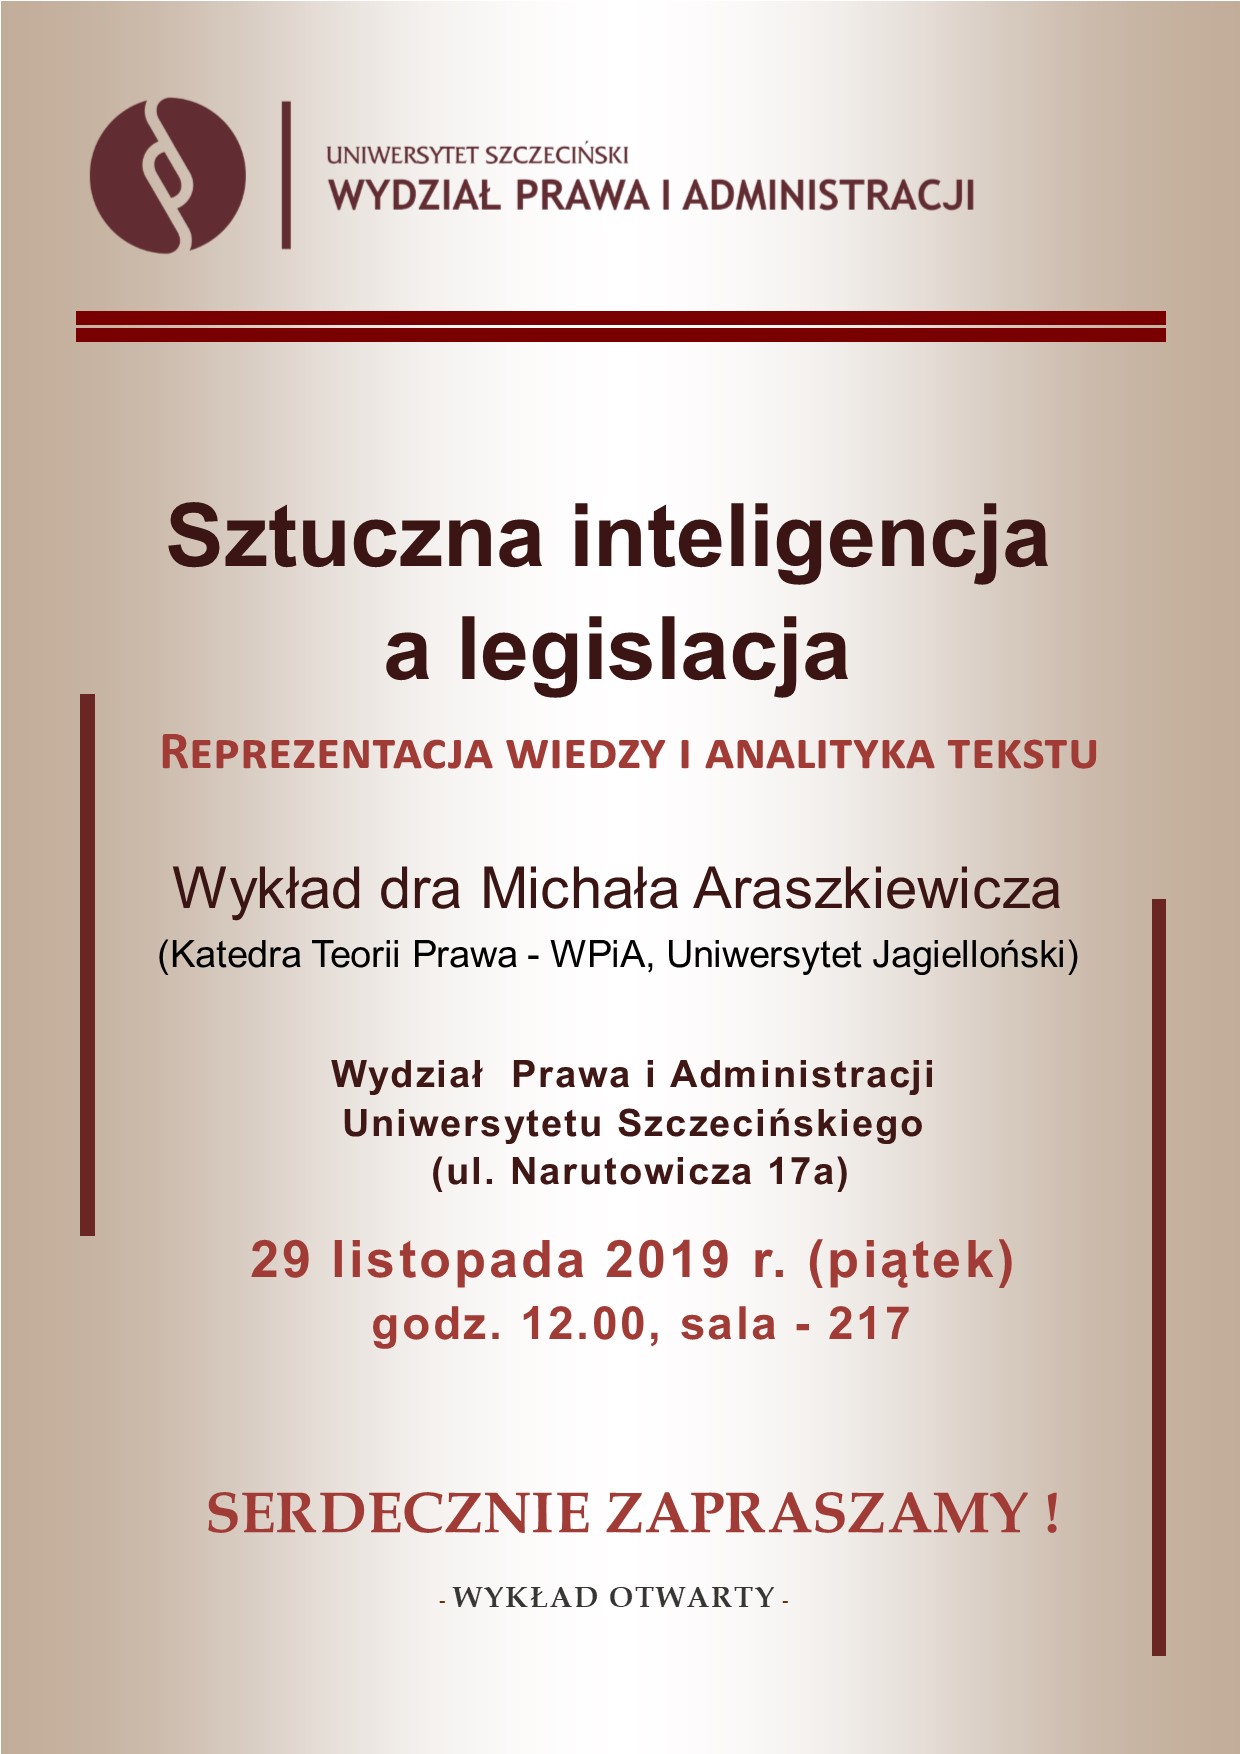 Sztuczna inteligencja a legislacja –  zaproszenie na wykład, 29.11.2019 r. (piątek)